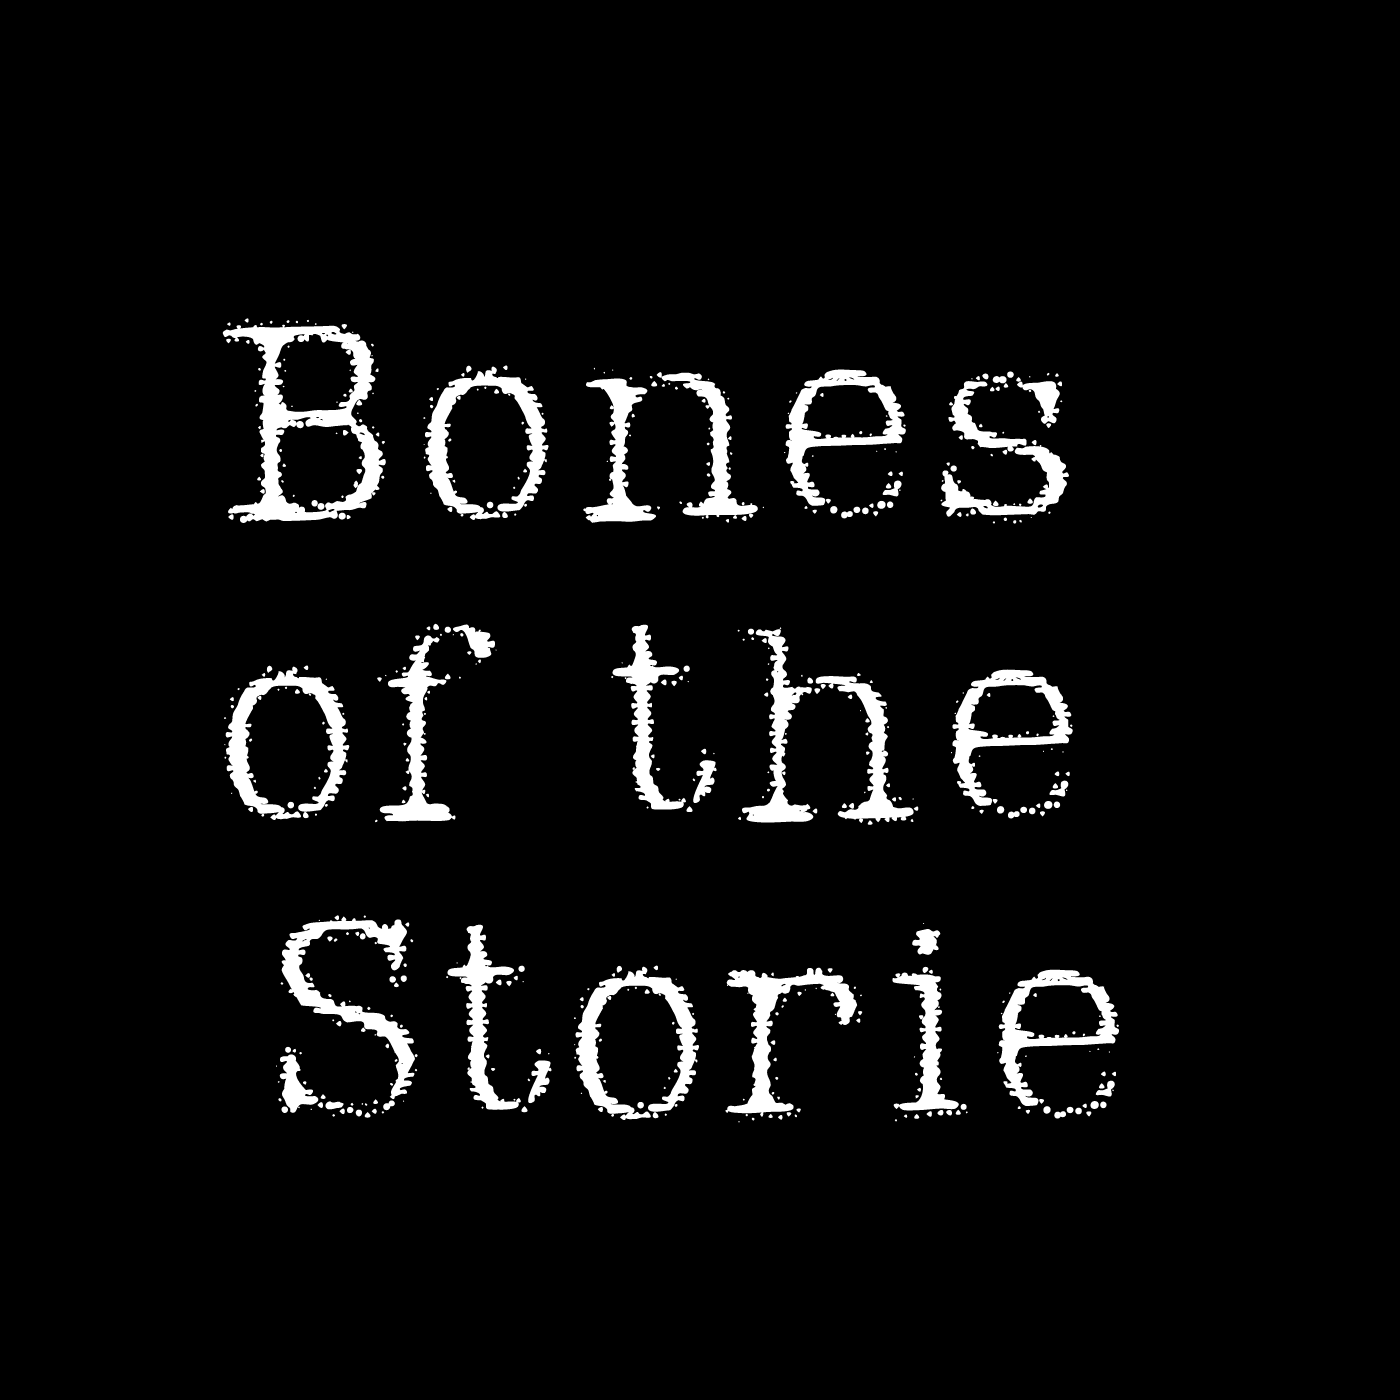 Show artwork for Bones of the Storie